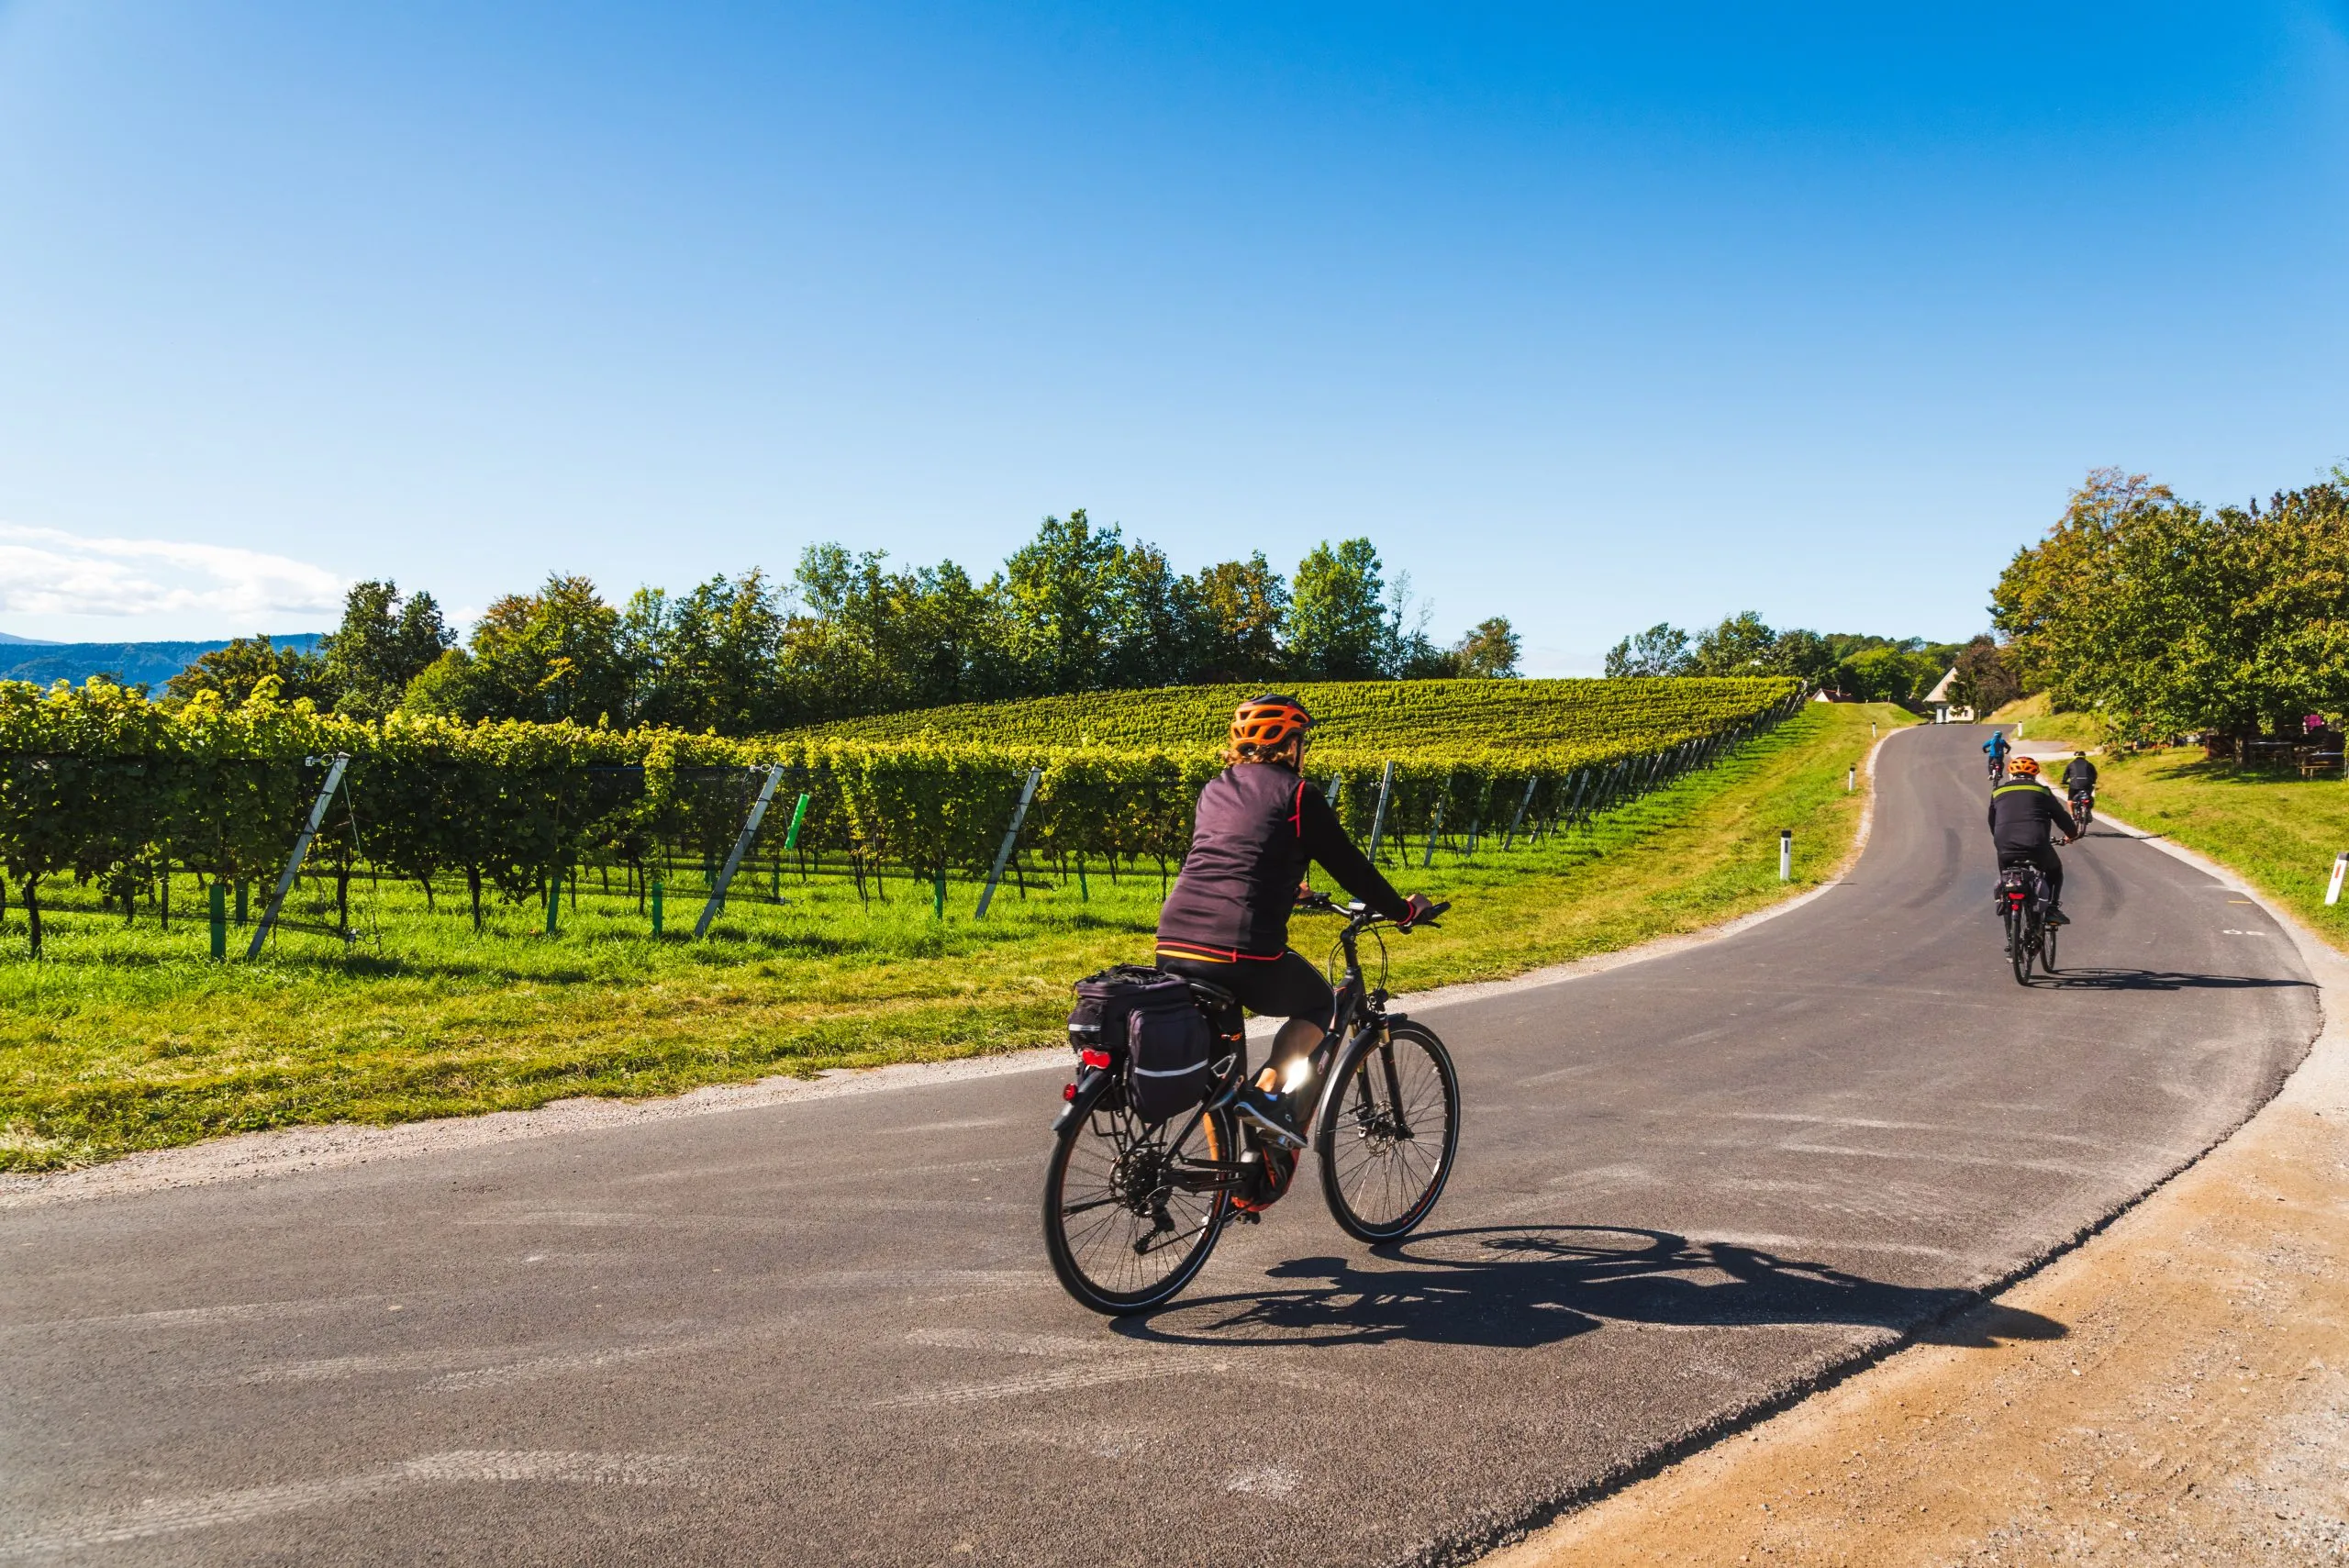 Cyklister på vinvägen, längs gränsen mellan Austra och Slovenien med vinodlingar på hösten.